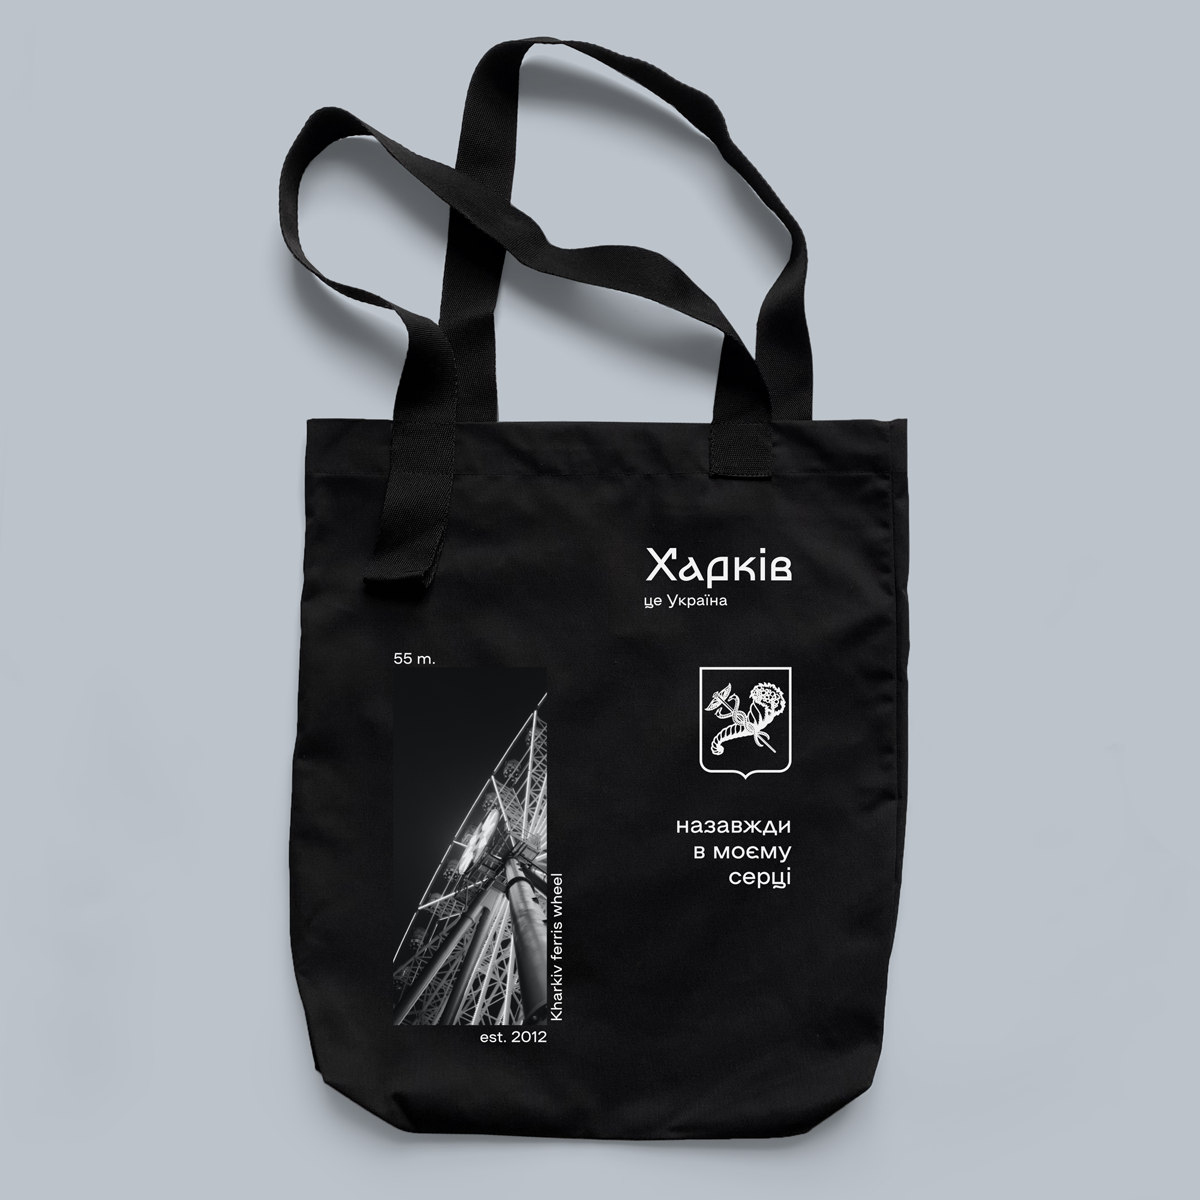 Еко сумка з малюнком "Харків - місто мого серця" / екосумка в патріотичному стилі